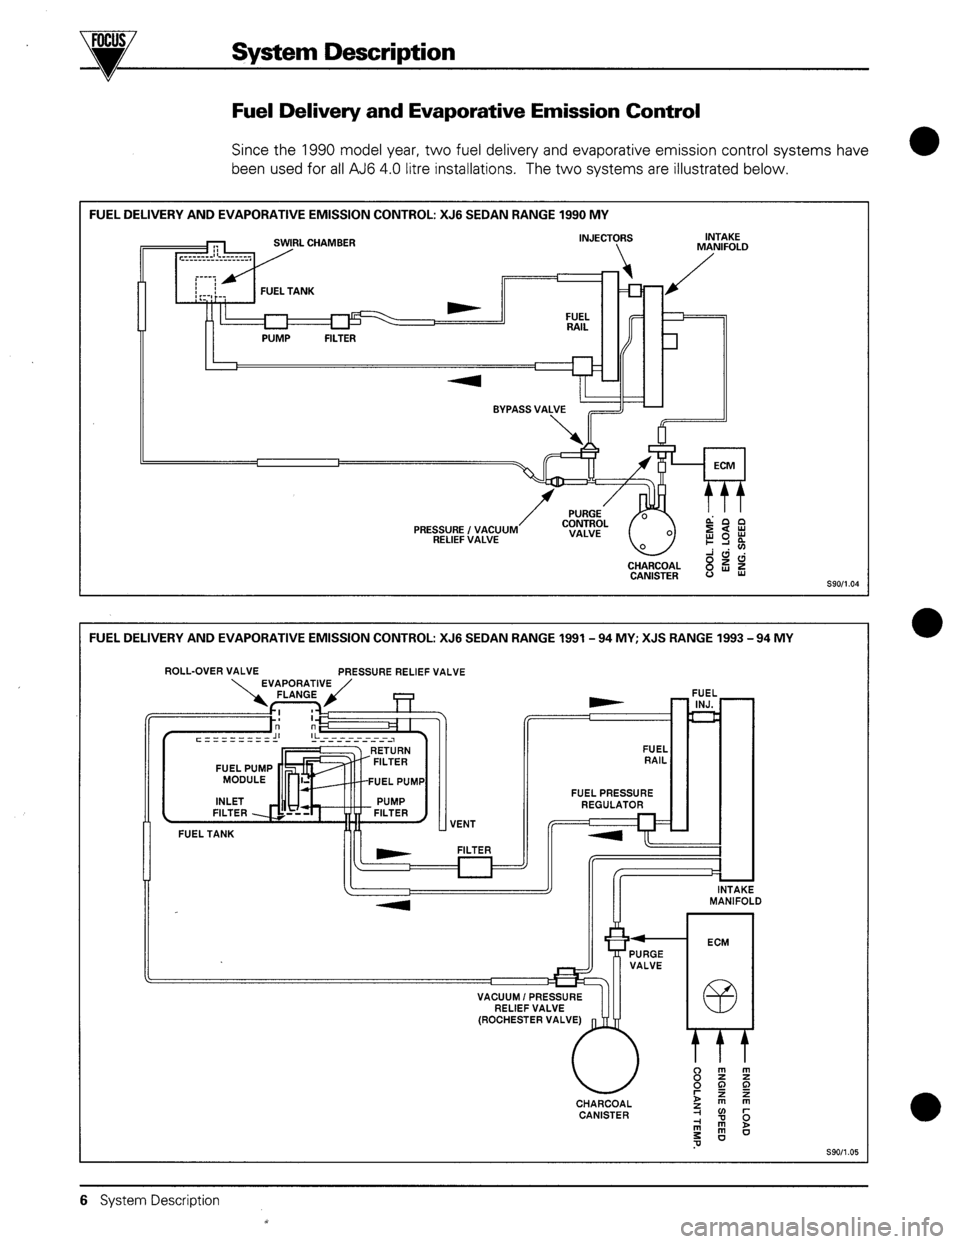 JAGUAR XJR 1994 X300 / 2.G AJ6 4.0L Engine Management Syst 